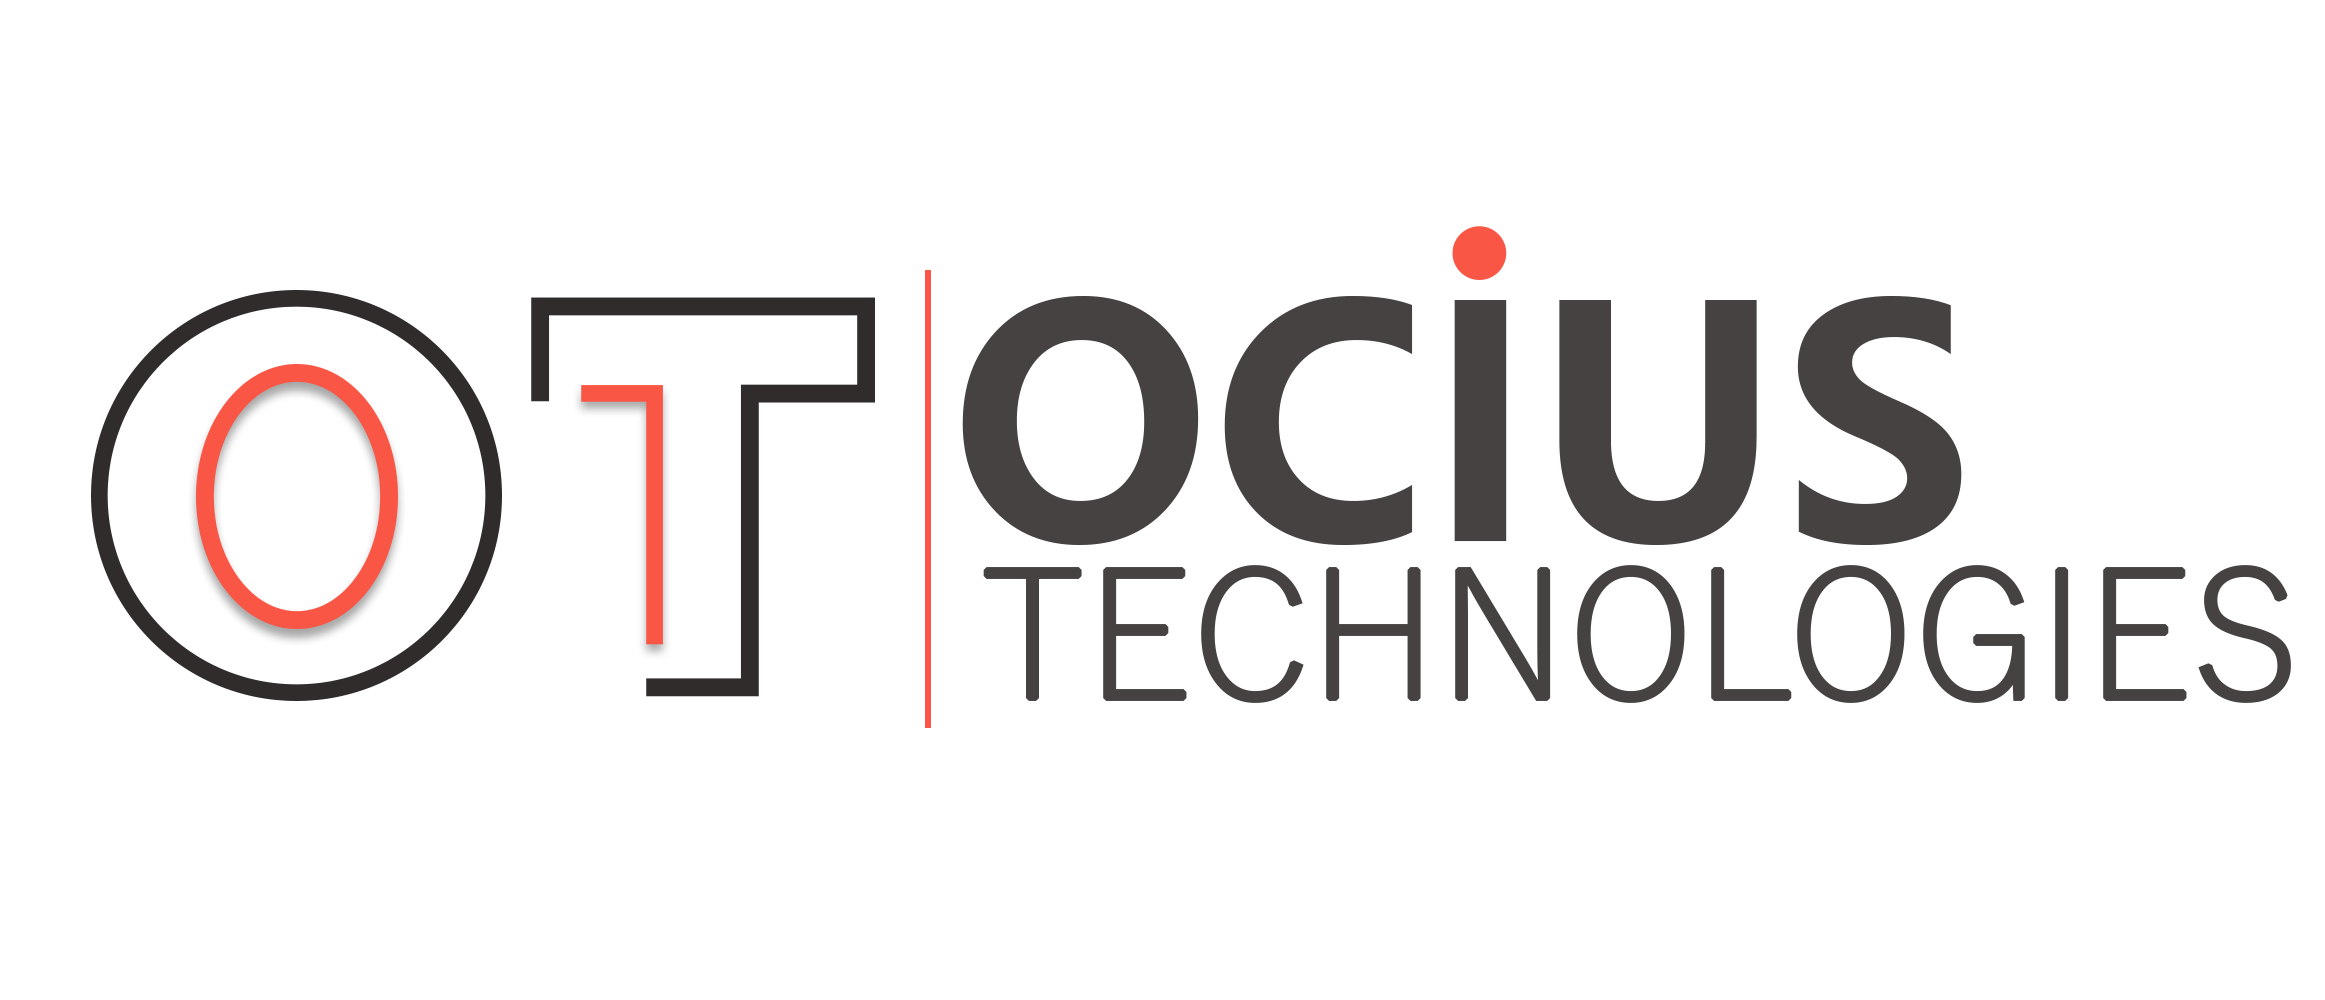 Ocius Technologies